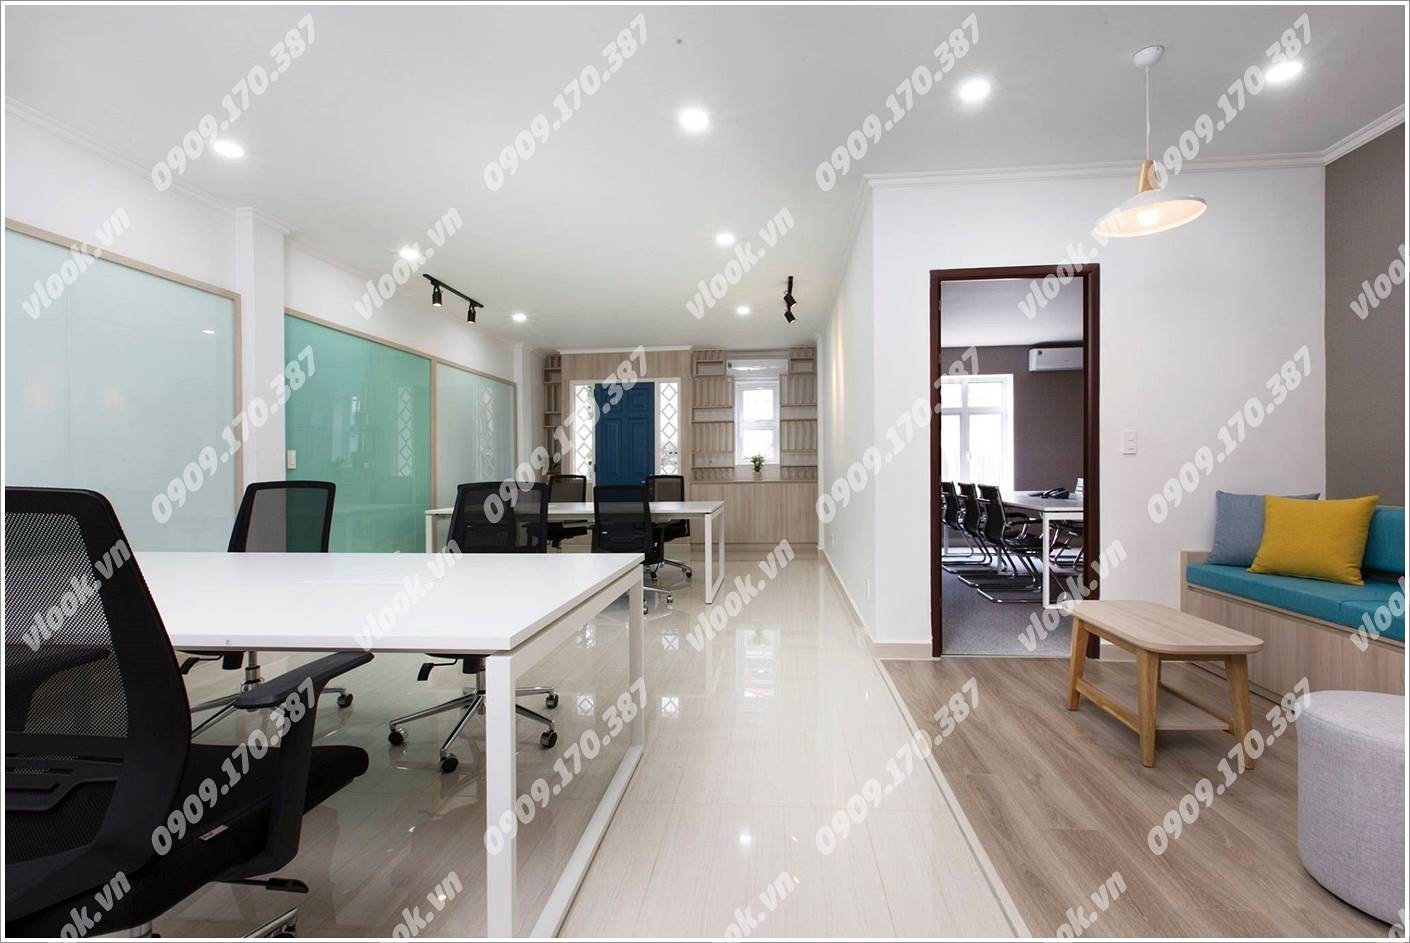 Cao ốc văn phòng cho thuê THL Building, Trần Huy Liệu, Quận Phú Nhuận, TPHCM - vlook.vn